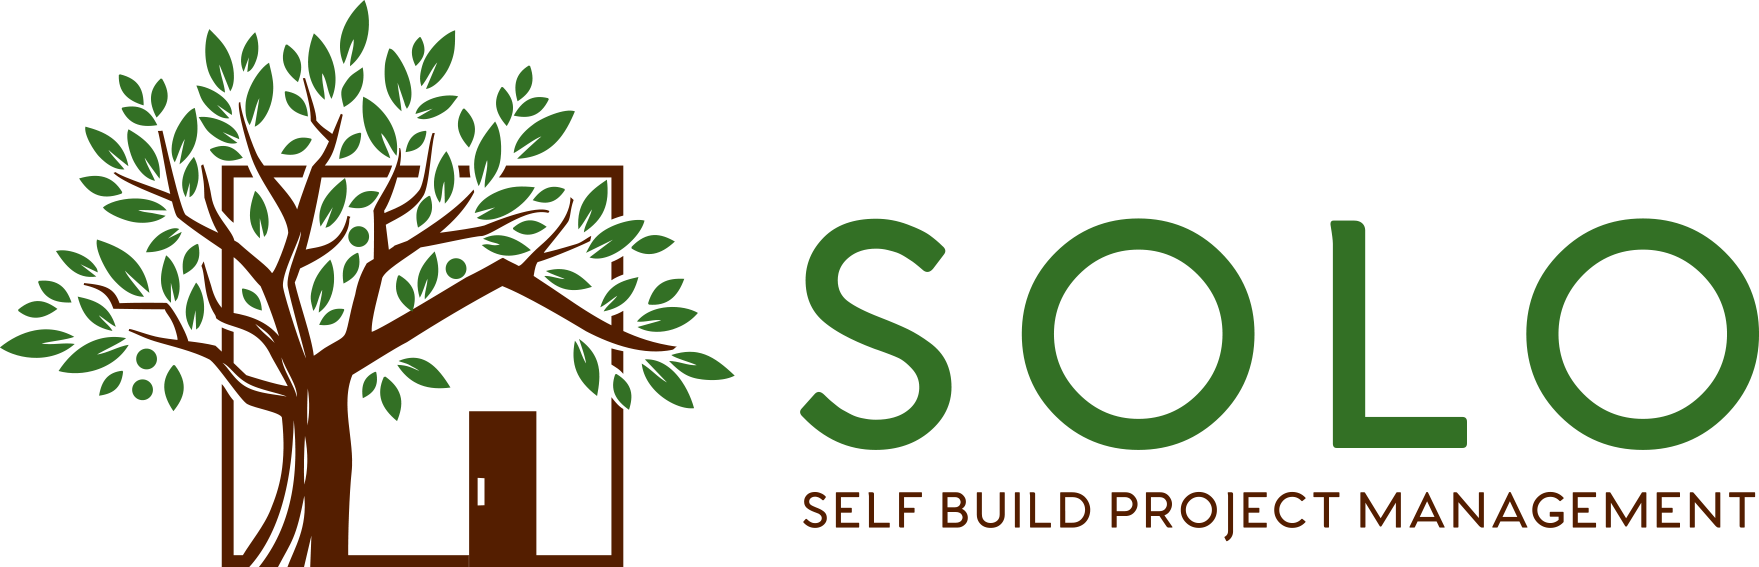 Self Build Project Management